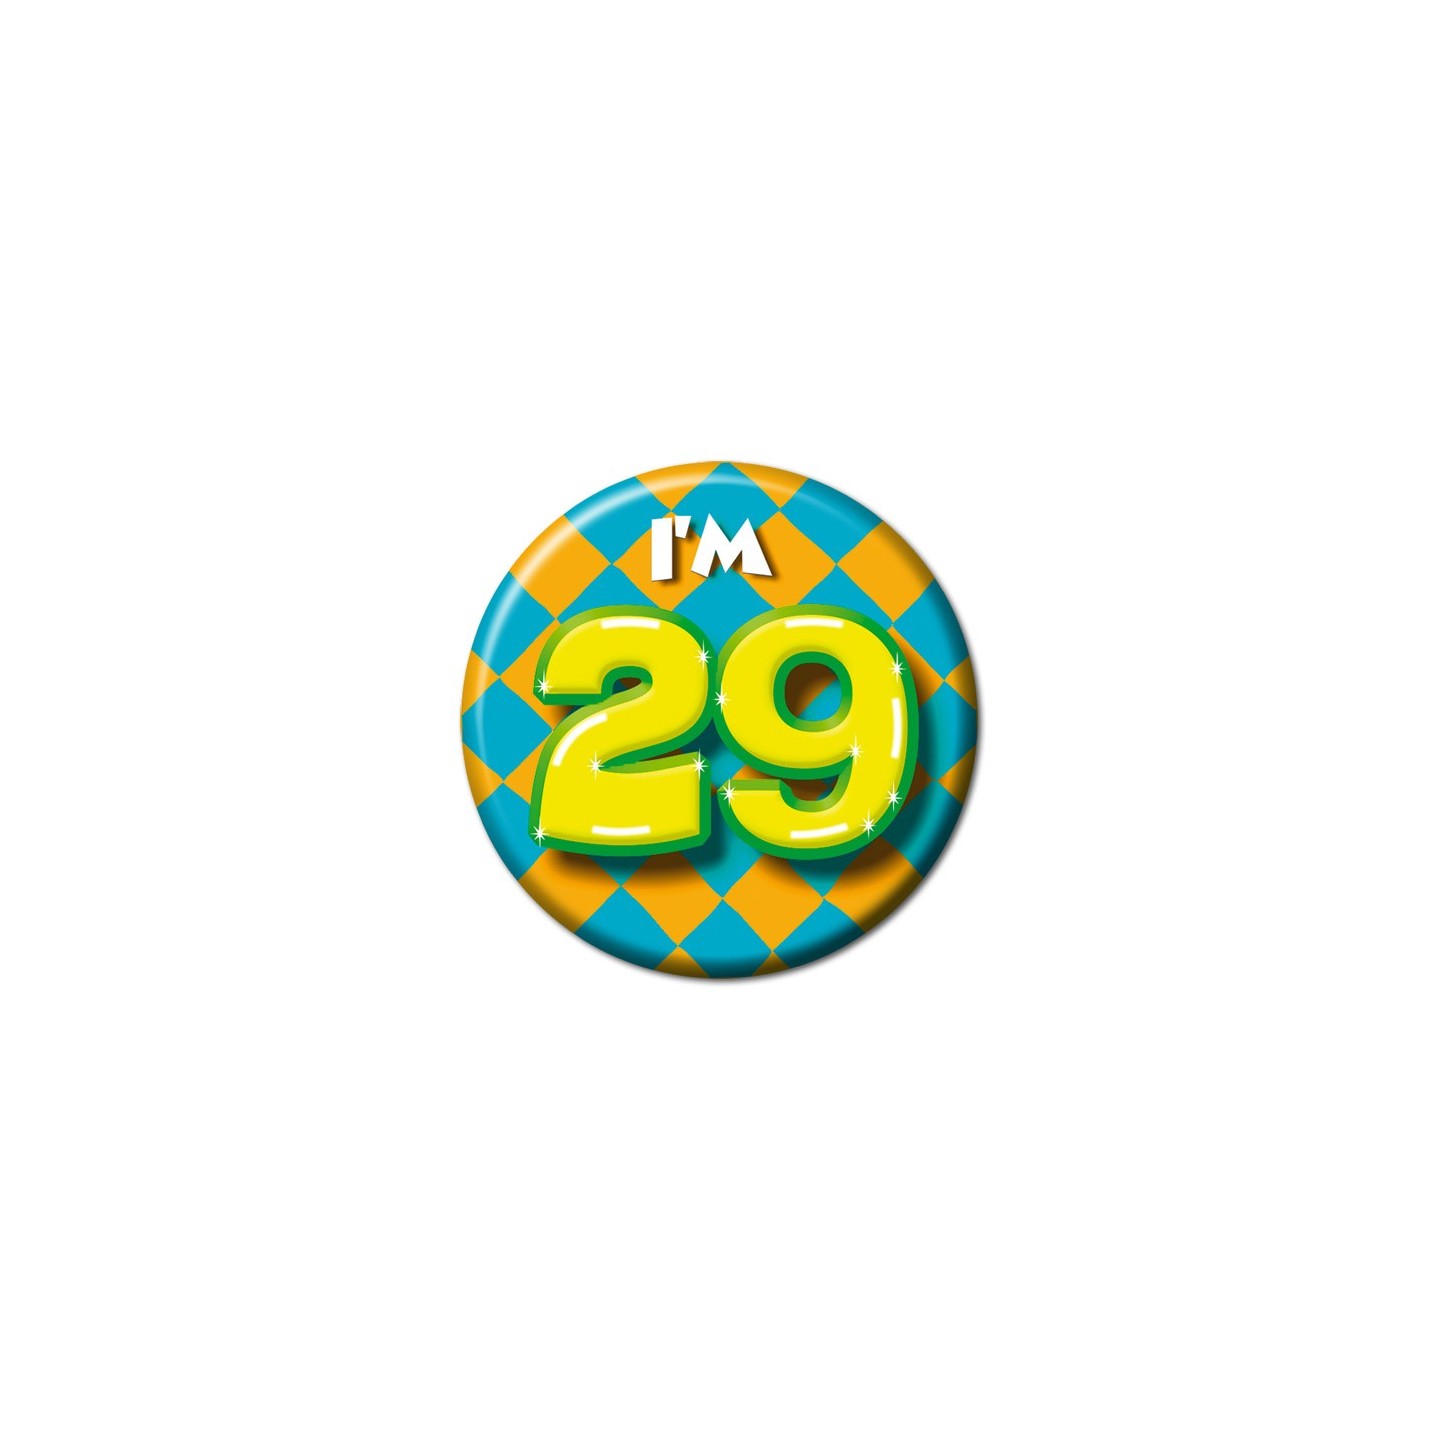 button 29 jaar verjaardag